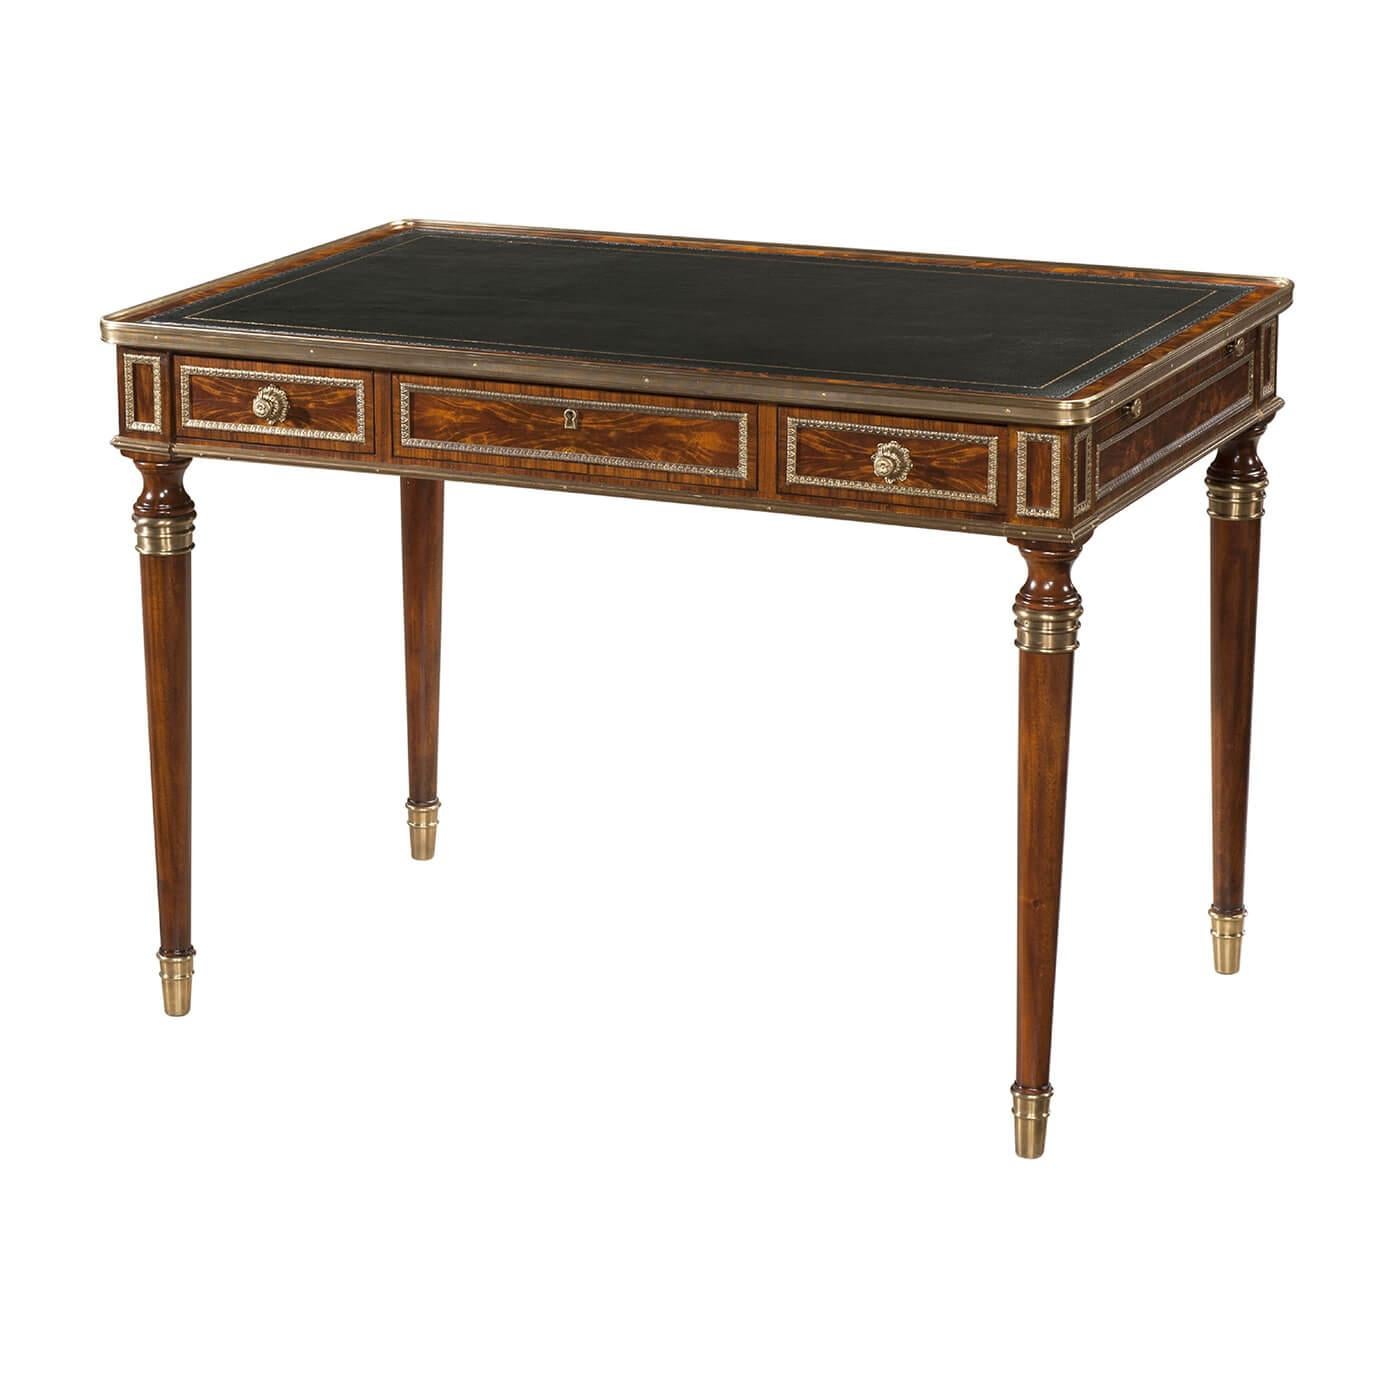 Bureau plat en acajou et laiton, avec une surface d'écriture en cuir et trois tiroirs en frise, sur des pieds tournés Français. L'original Louis XVI.

Dimensions : 42.75